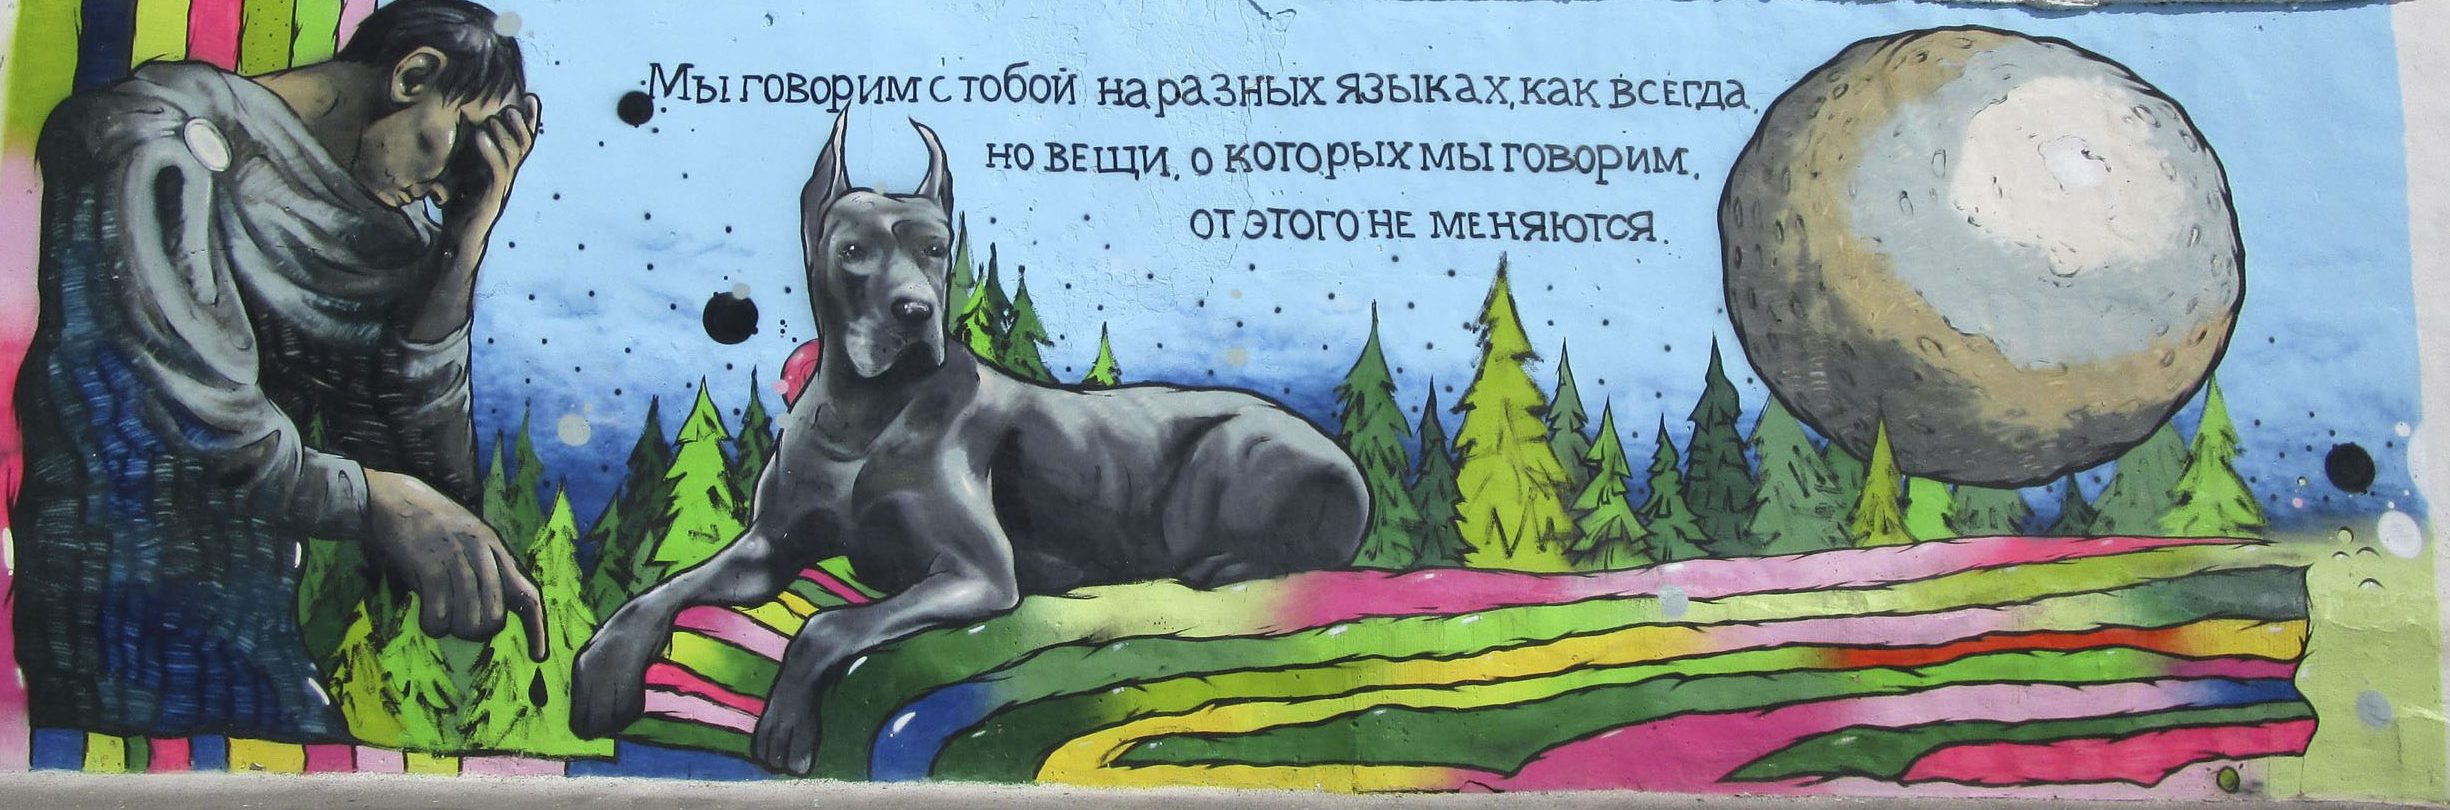 Герои Булгакова. Граффити в Саратове